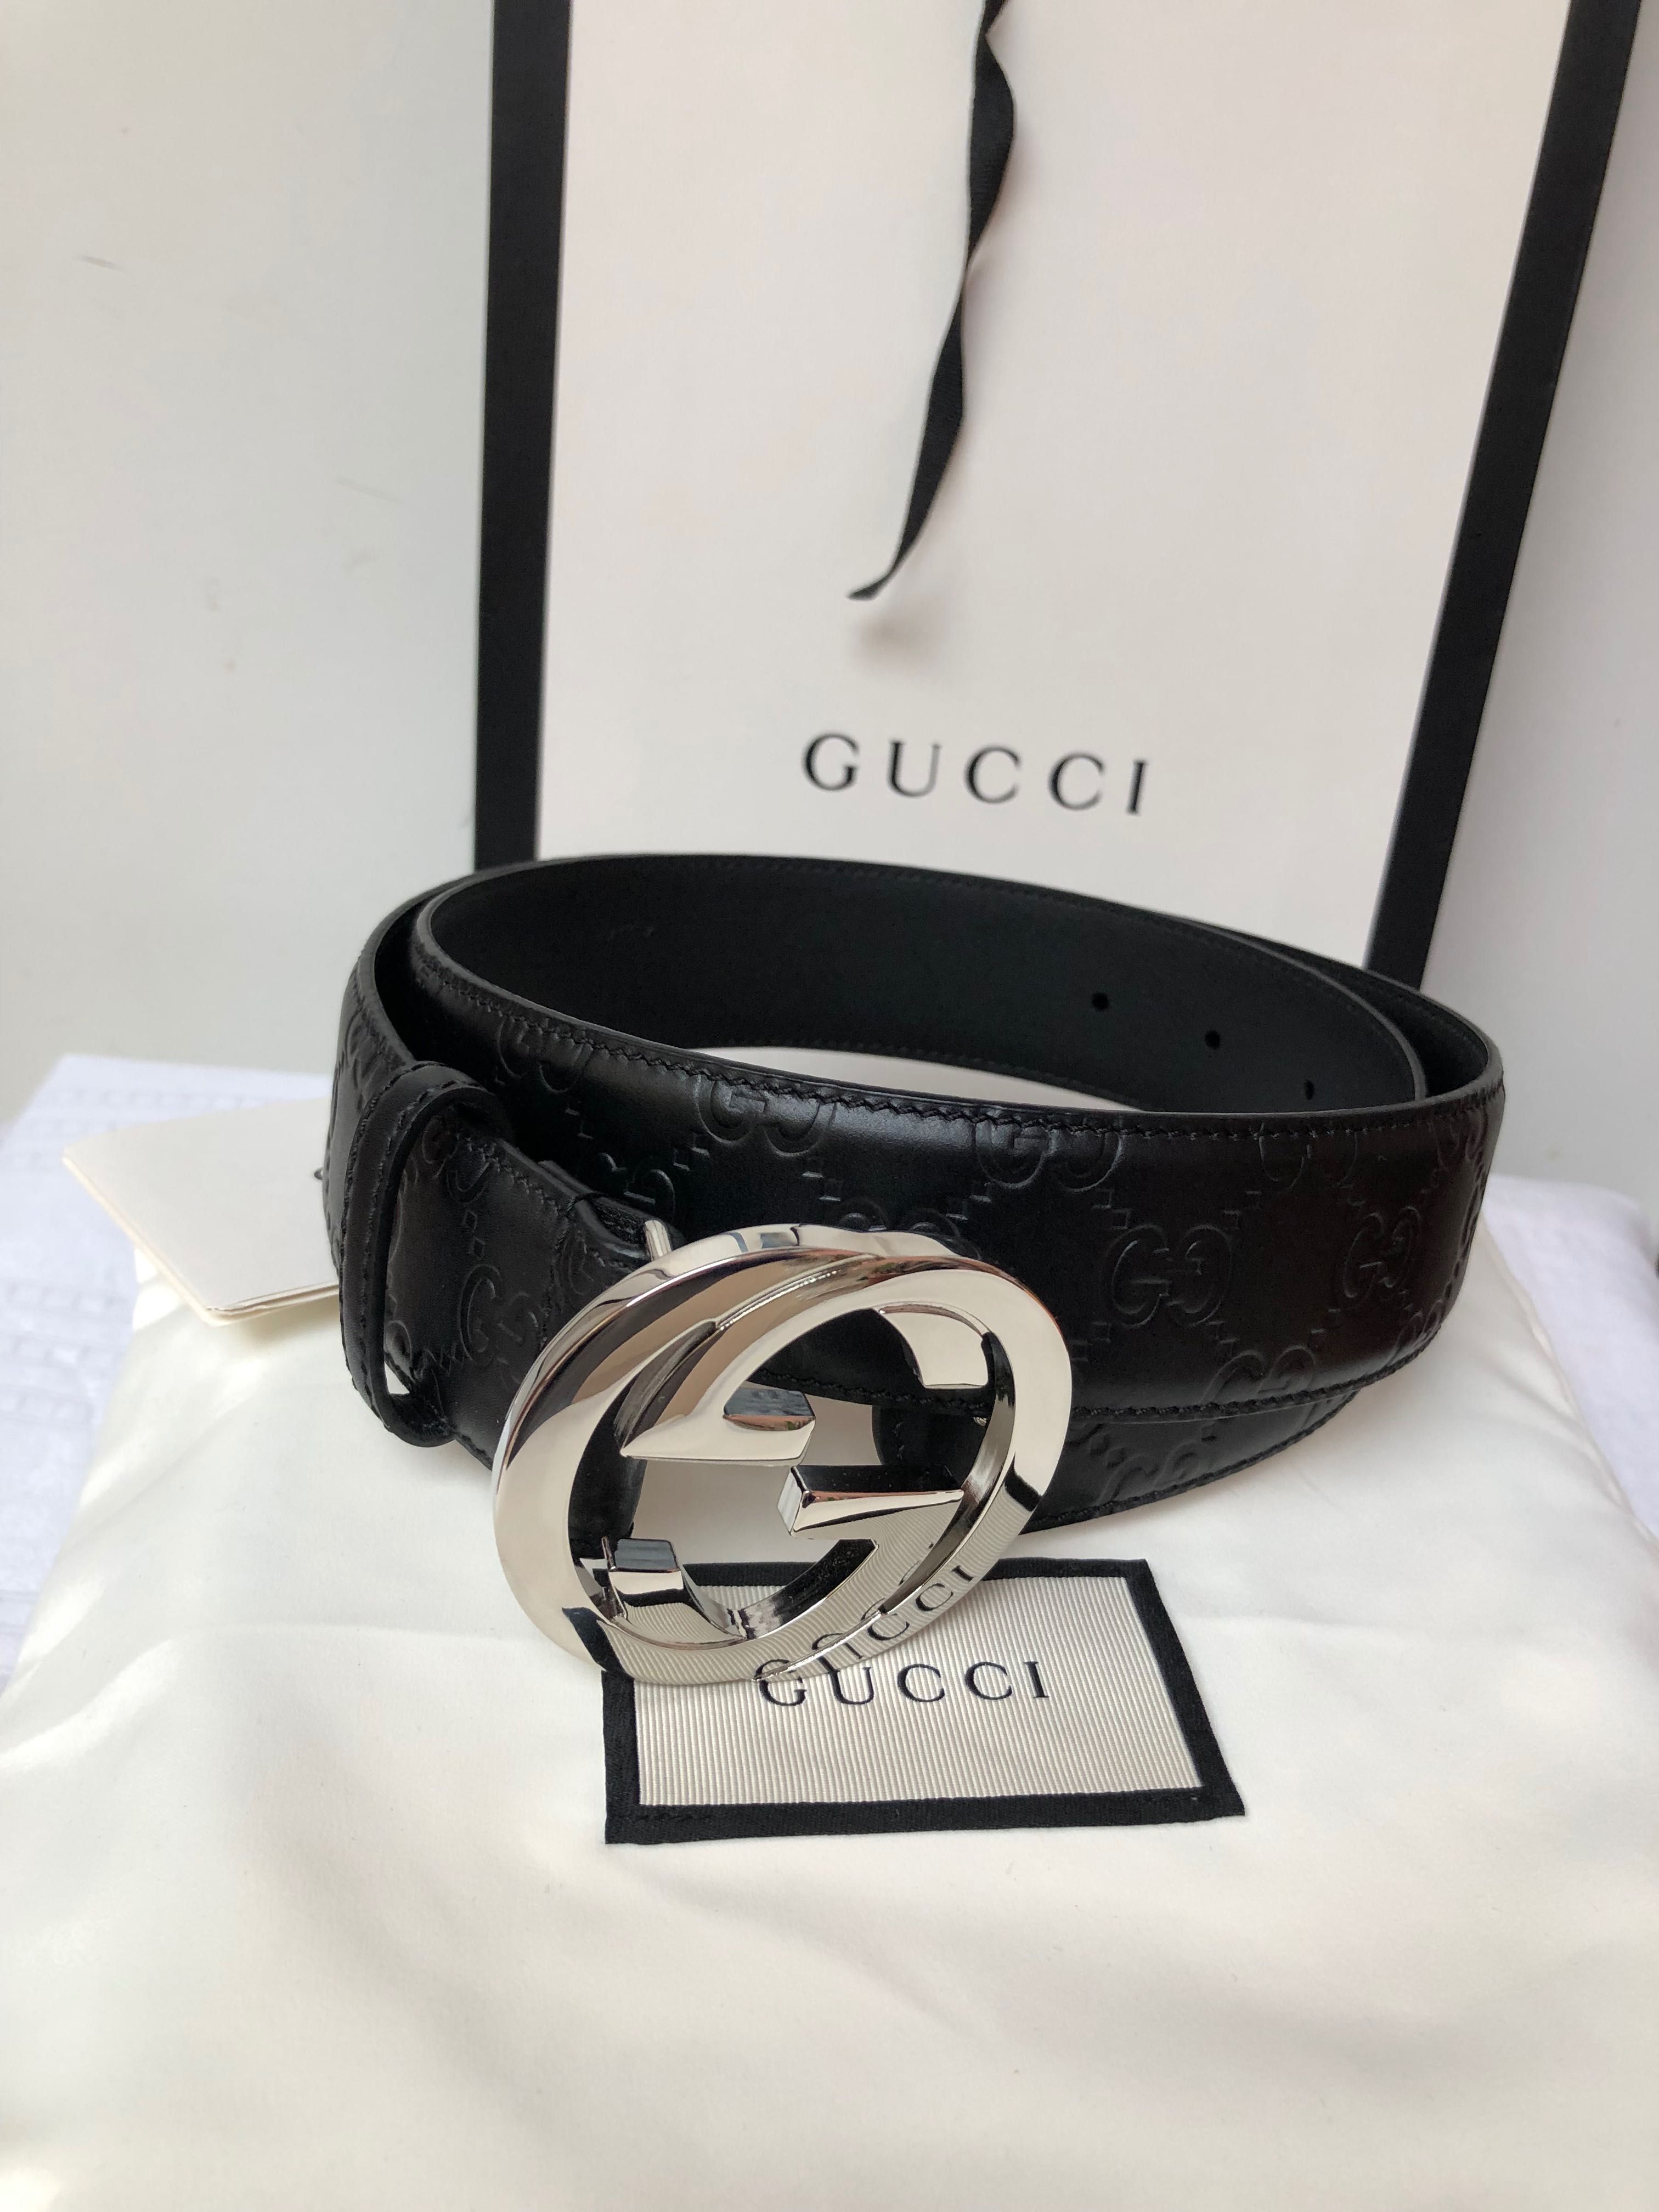 Curea originala Gucci Signature din piele noua cu factura